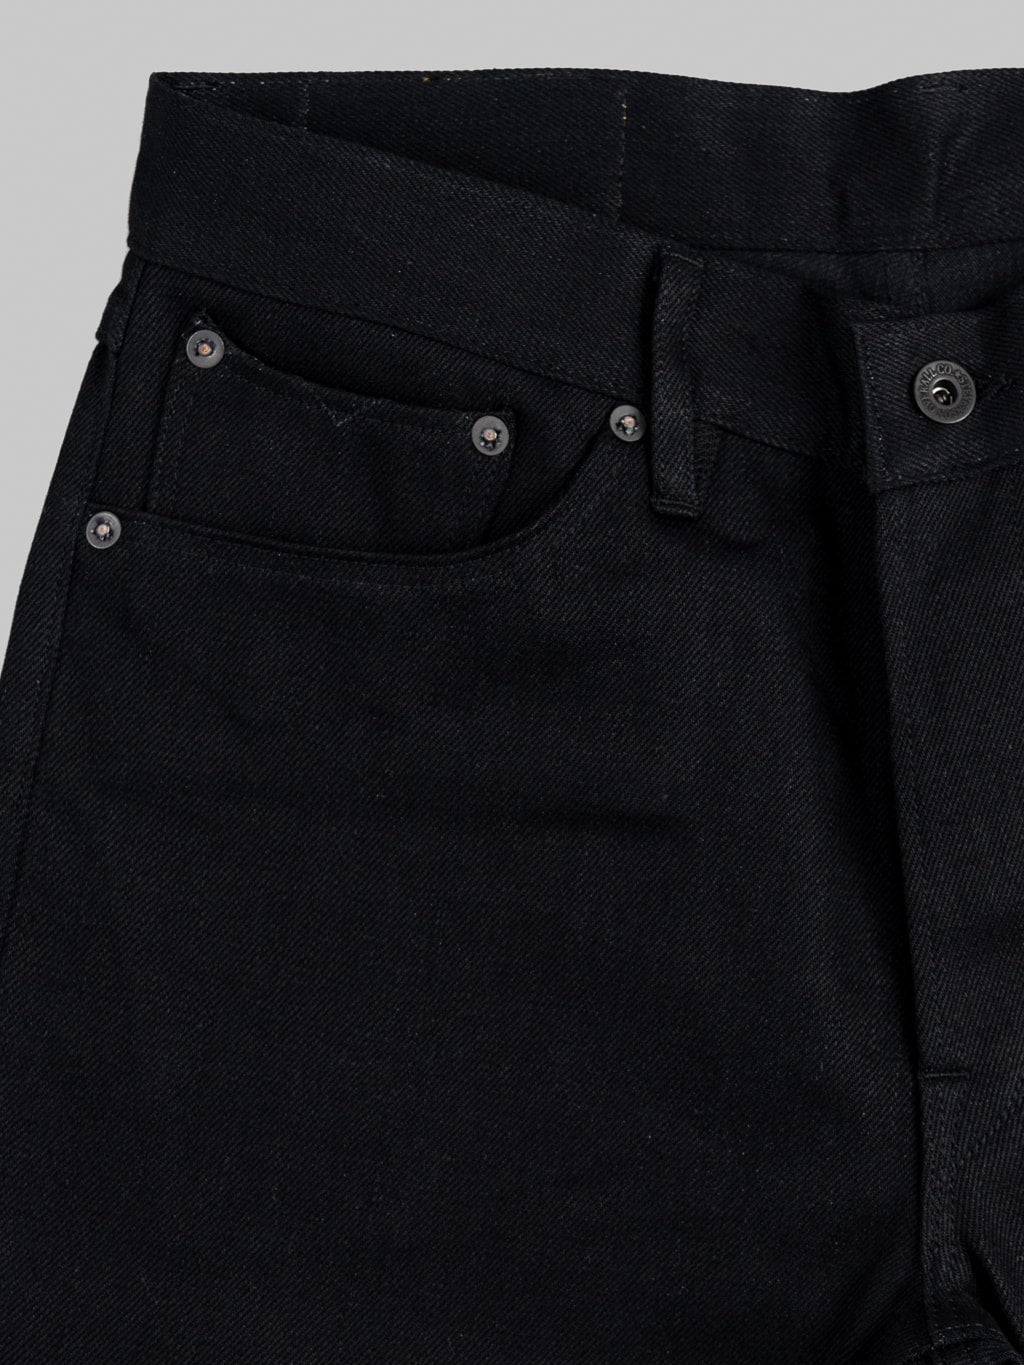 Stevenson Overall Big Sur 210 12oz Slim Tapered jeans solid black pocket